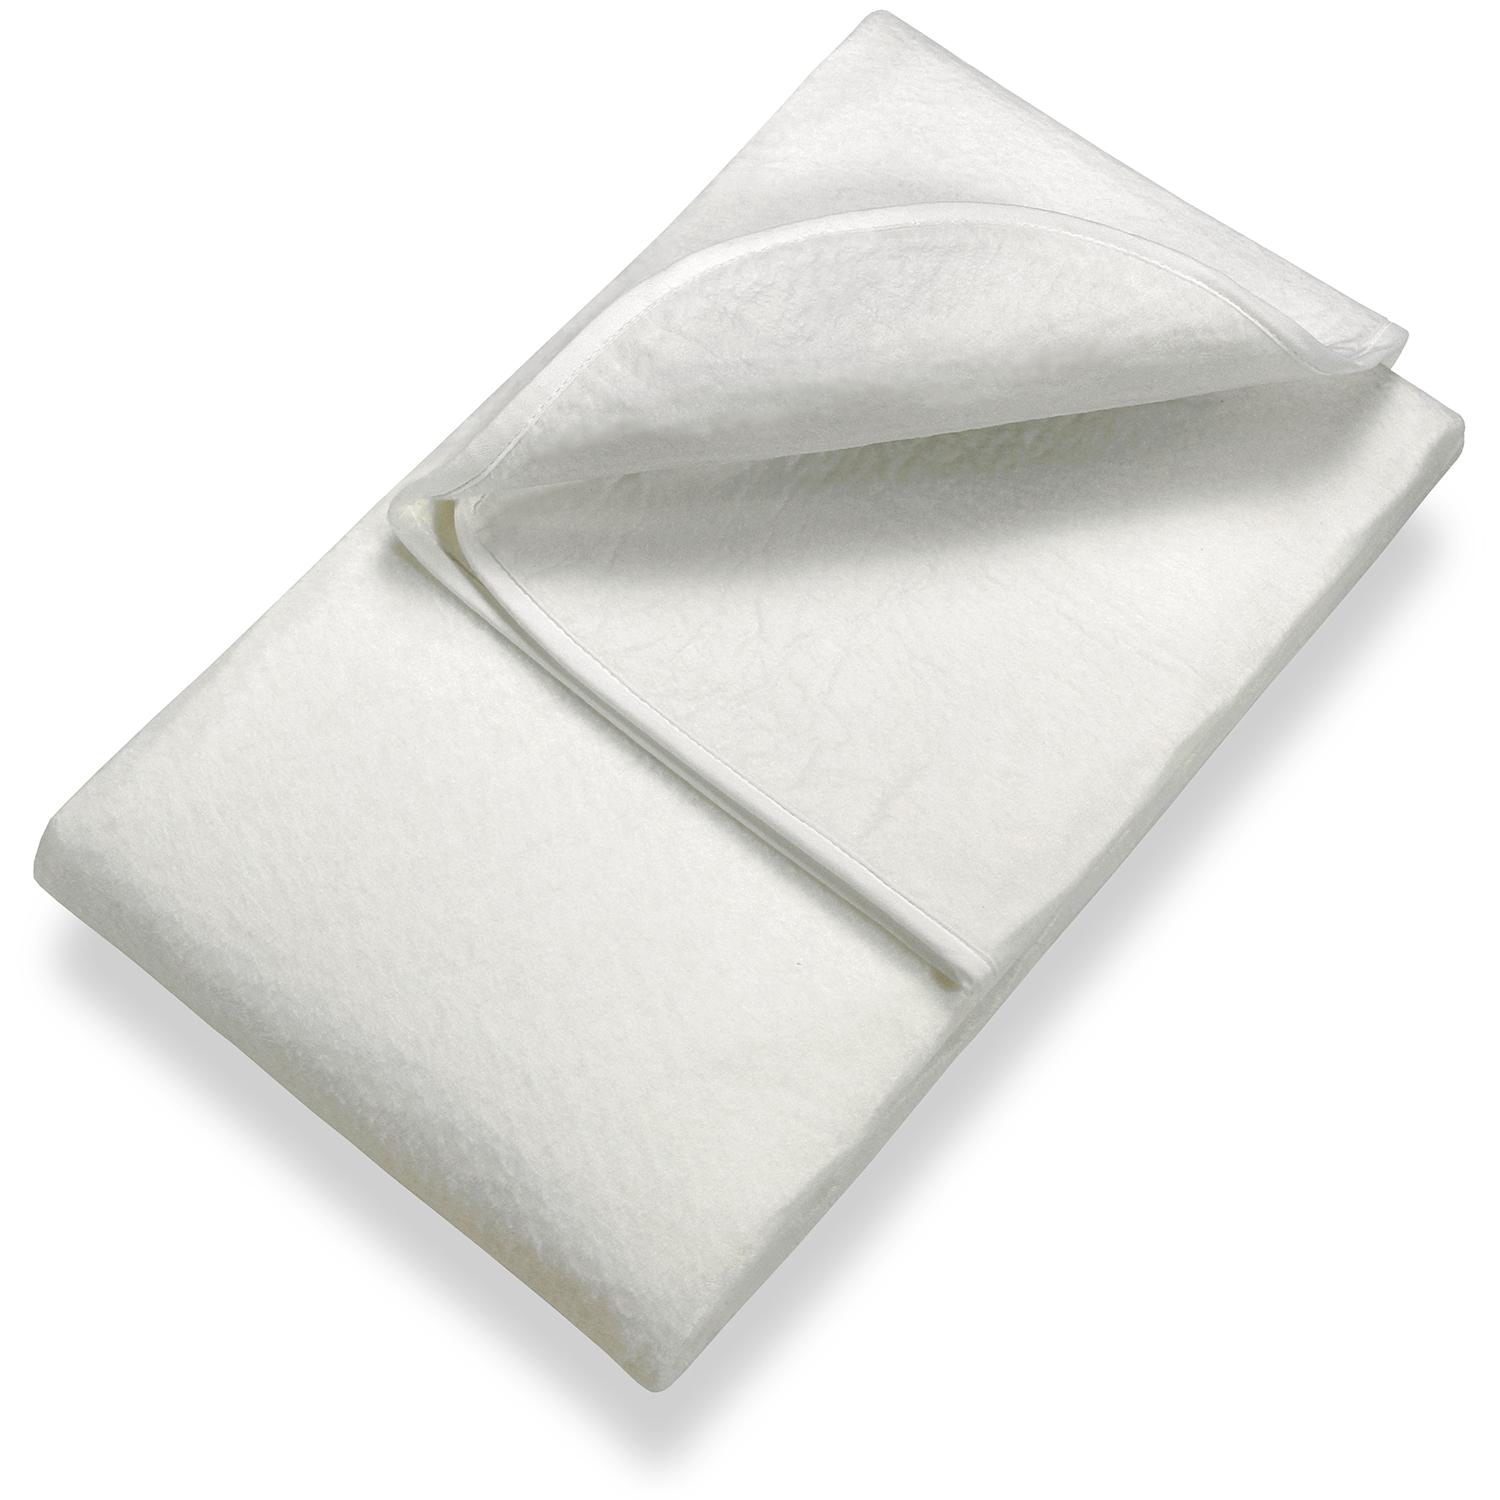 Sleezzz Basic Basic Needle, bază de saltea din pâslă 160 x 200 cm, protecție pentru saltea care se pune pe cadrul cu lamele, alb